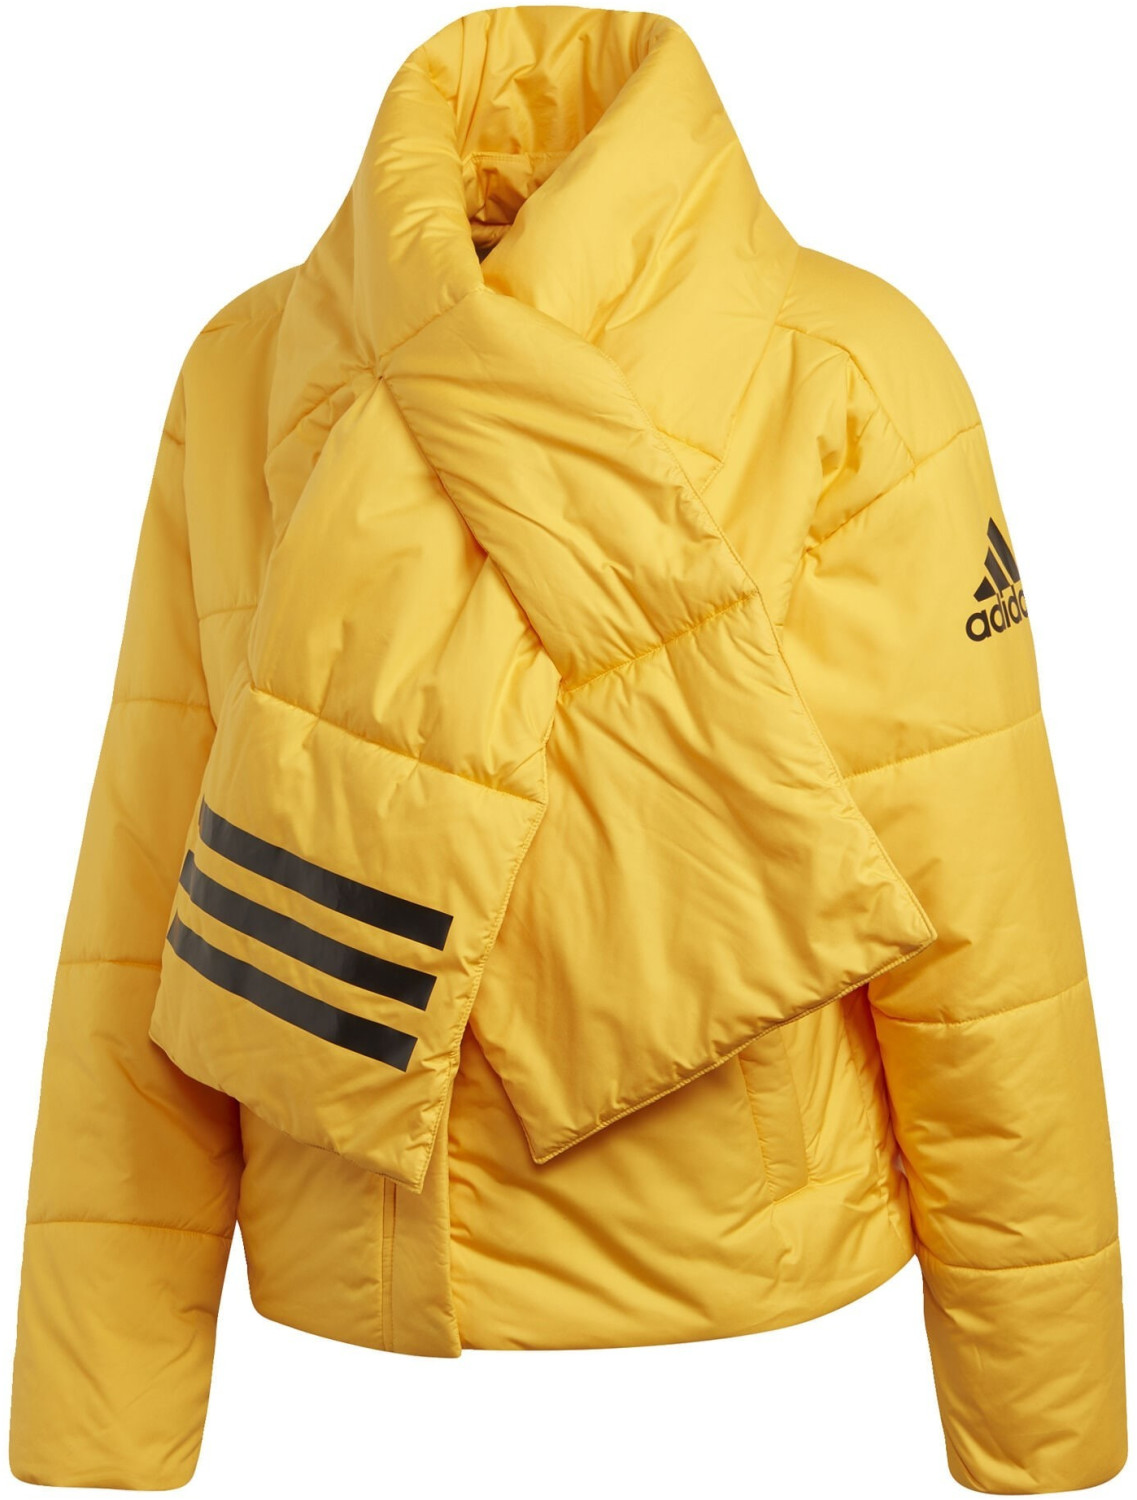 Adidas Women Lifestyle Big Baffle Bomber Jacket active gold (DZ1509